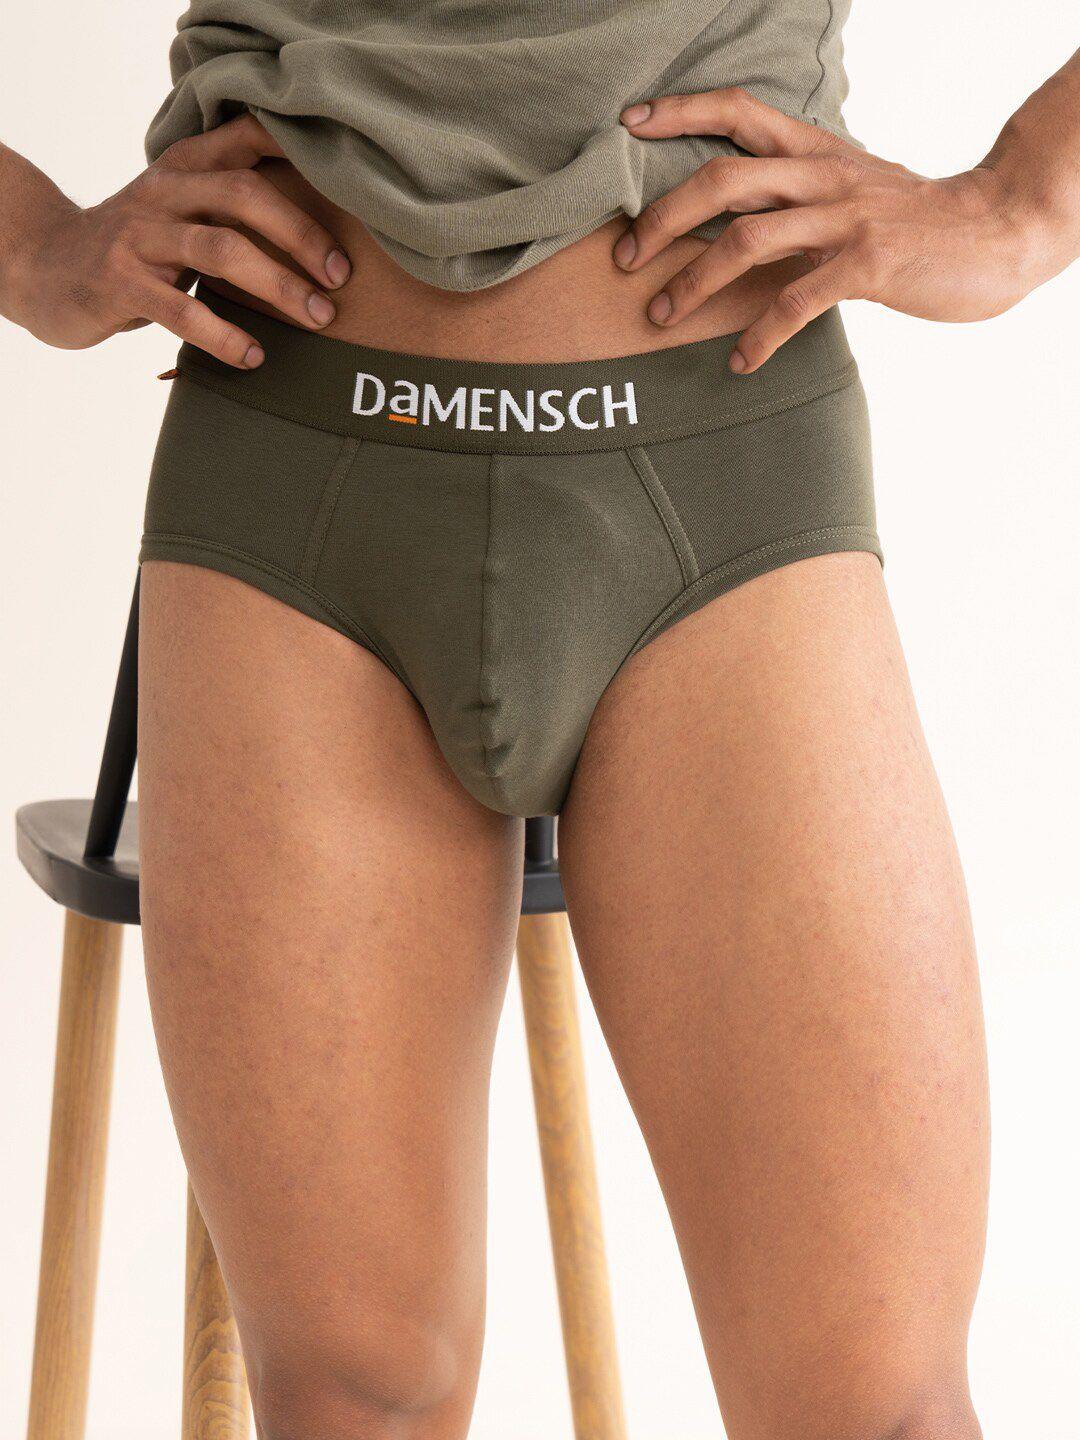 damensch men deo-cotton anti-bacterial moisture-free briefs